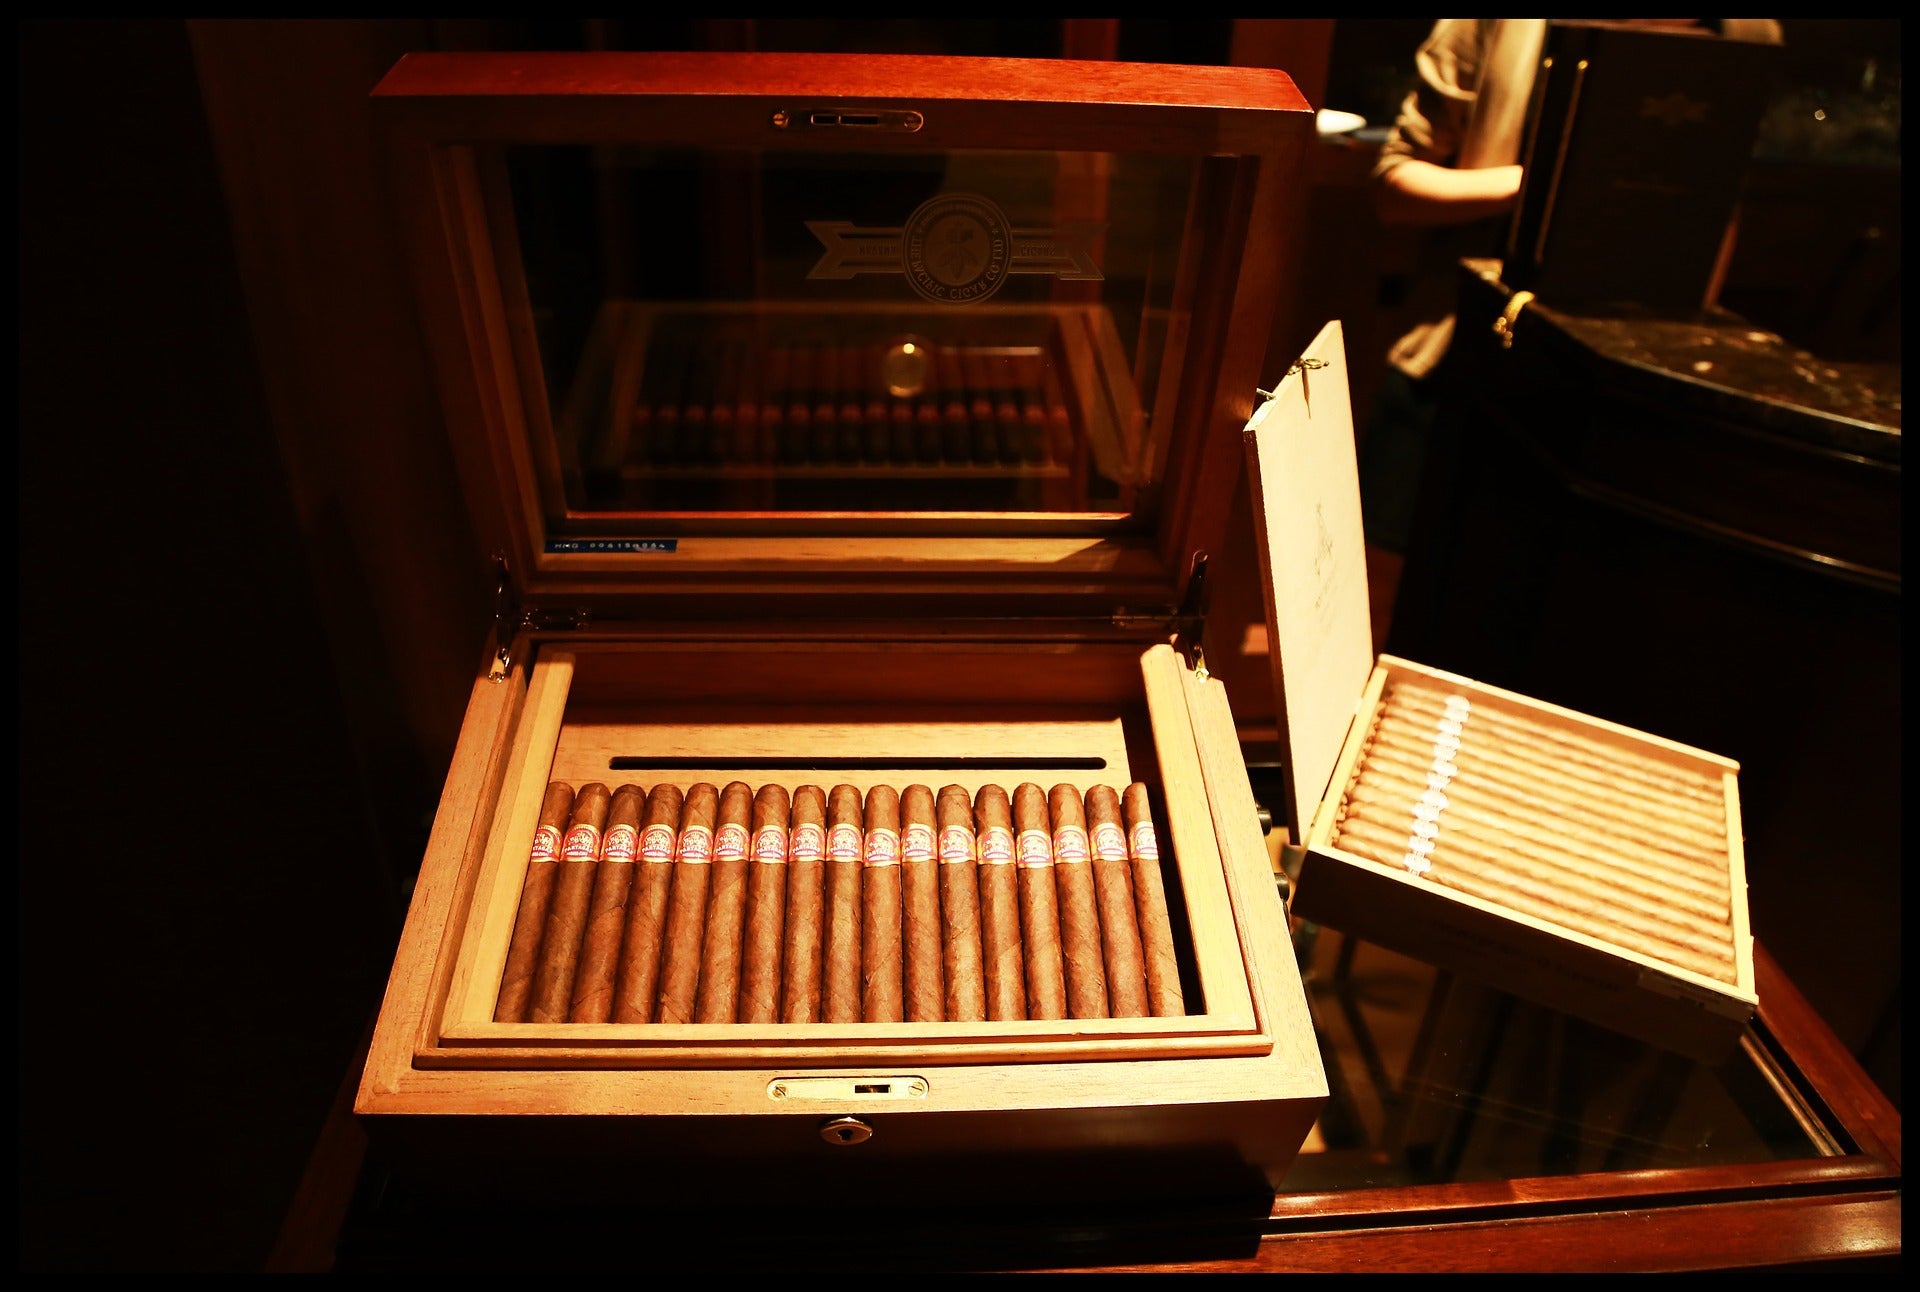 The World Famous Montecristo No. 2 Cigar